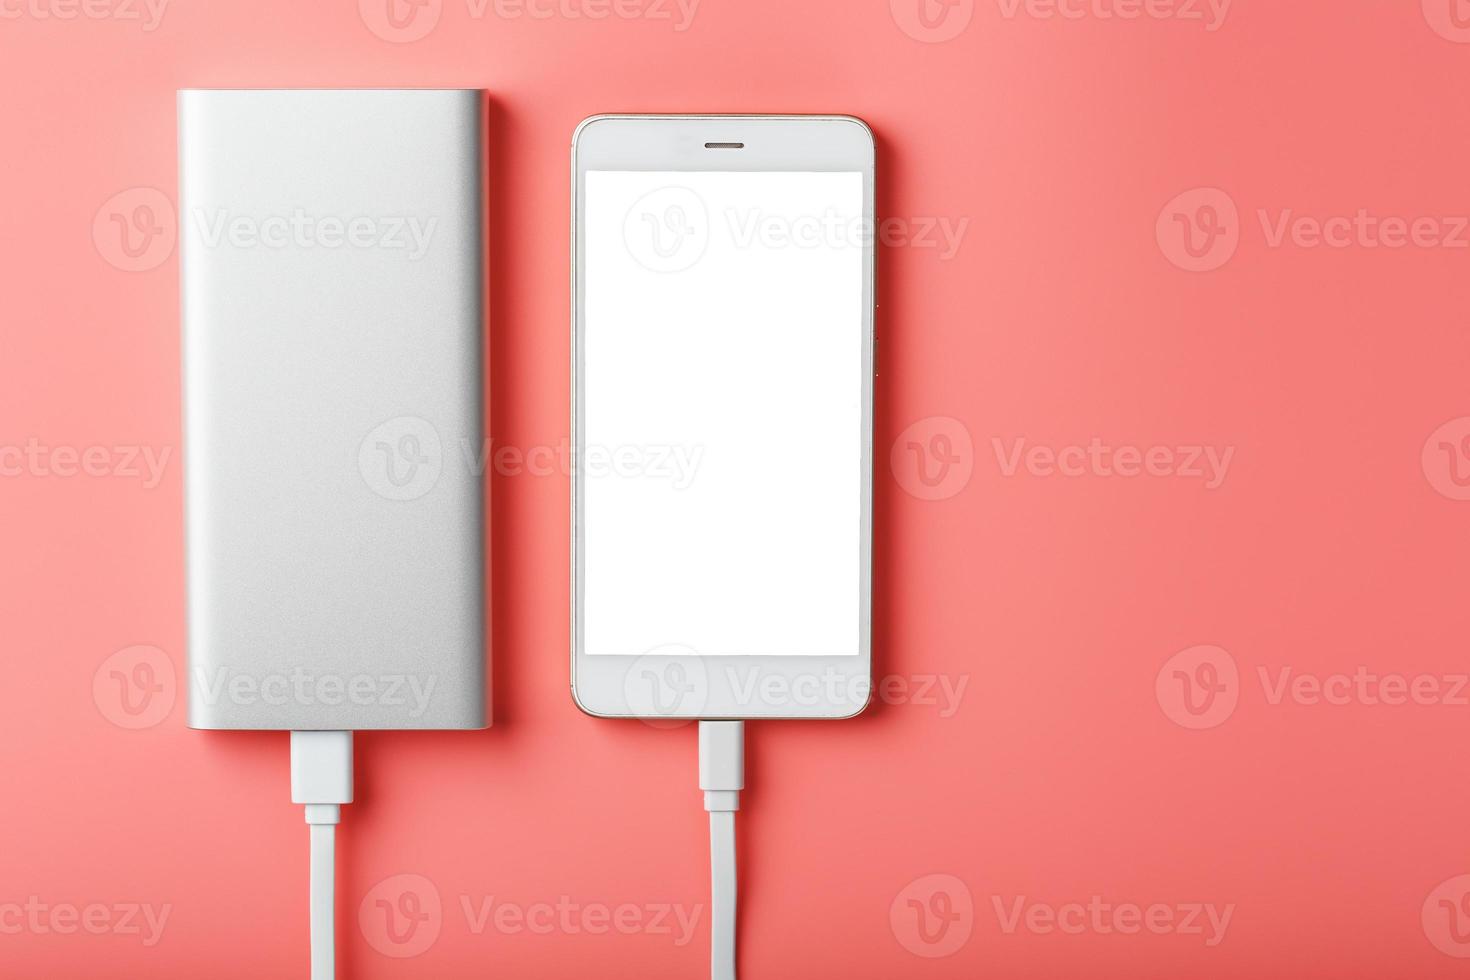 powerbank carrega um smartphone em um fundo rosa. bateria externa universal para gadgets espaço livre e composição minimalista. foto